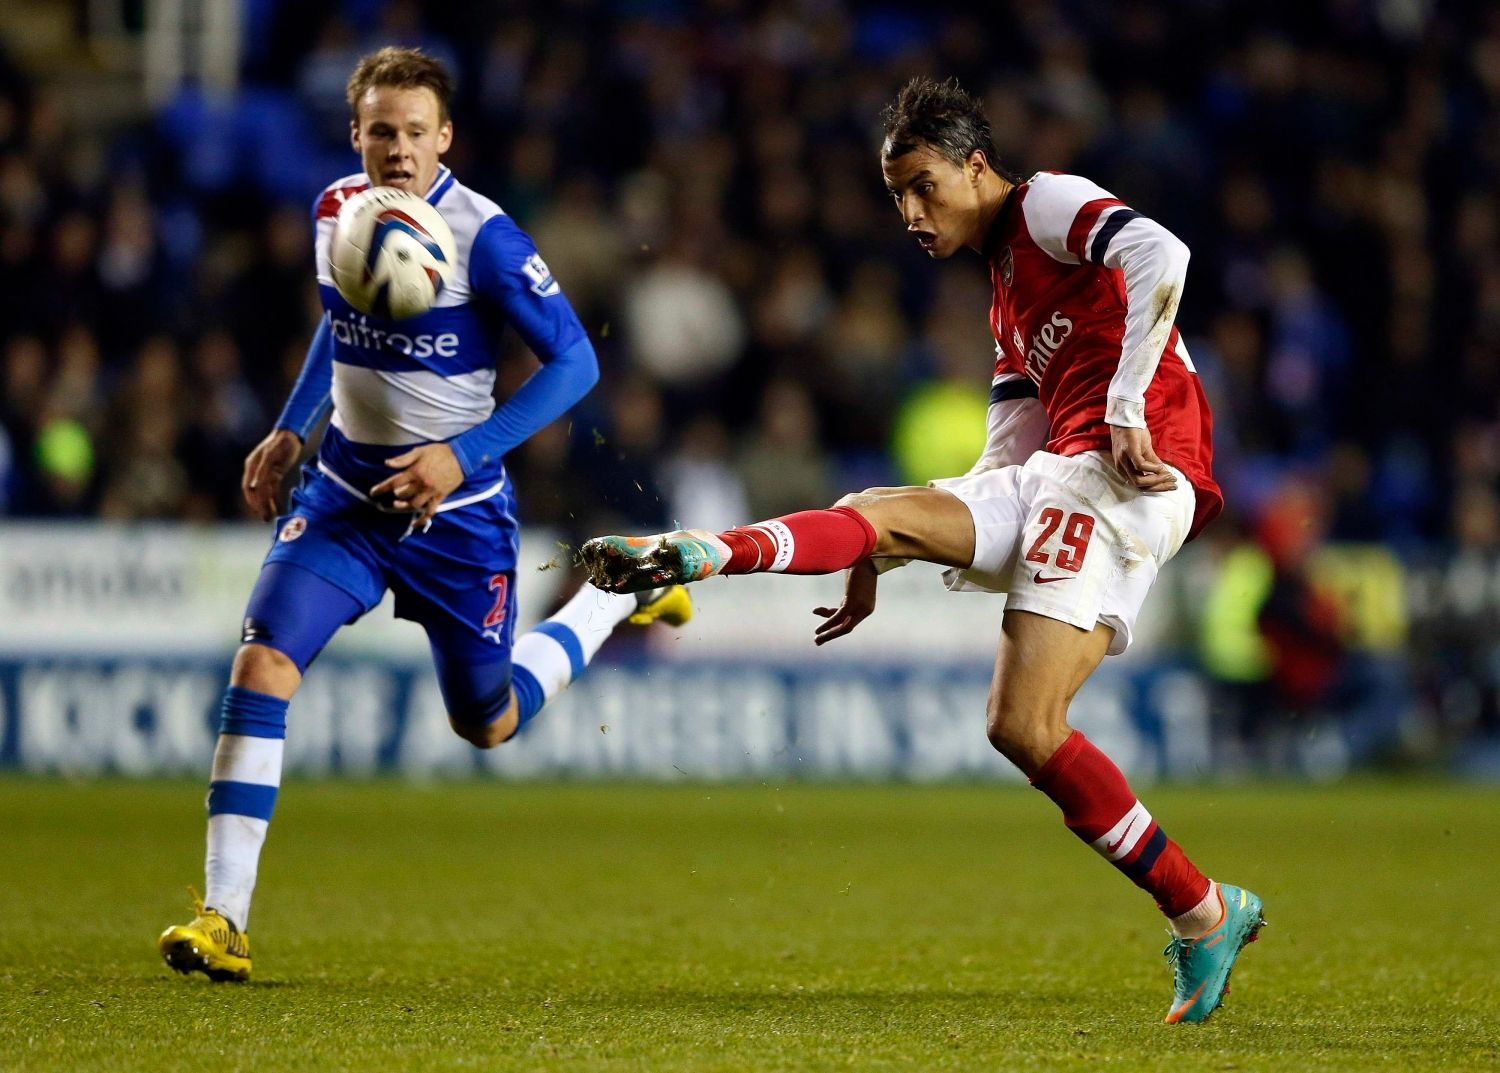 Fotbalista Arsenalu Marouane Chamakh střílí gól v utkání anglického poháru 2012/13 proti Readingu.